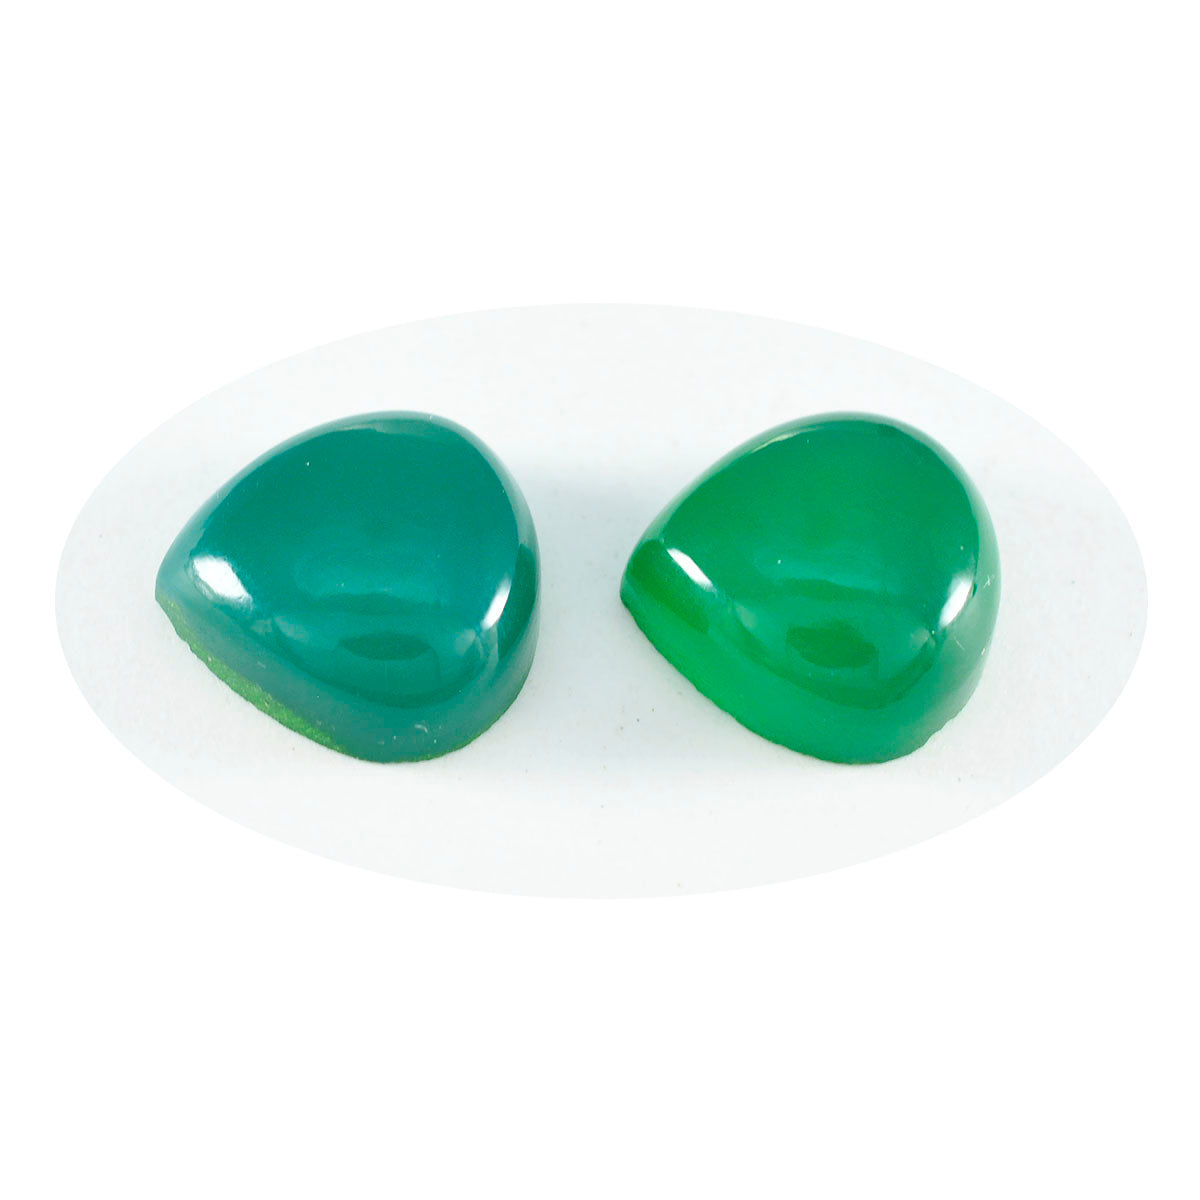 Riyogems 1 pieza cabujón de ónix verde 12x12mm forma de corazón gema suelta de calidad dulce